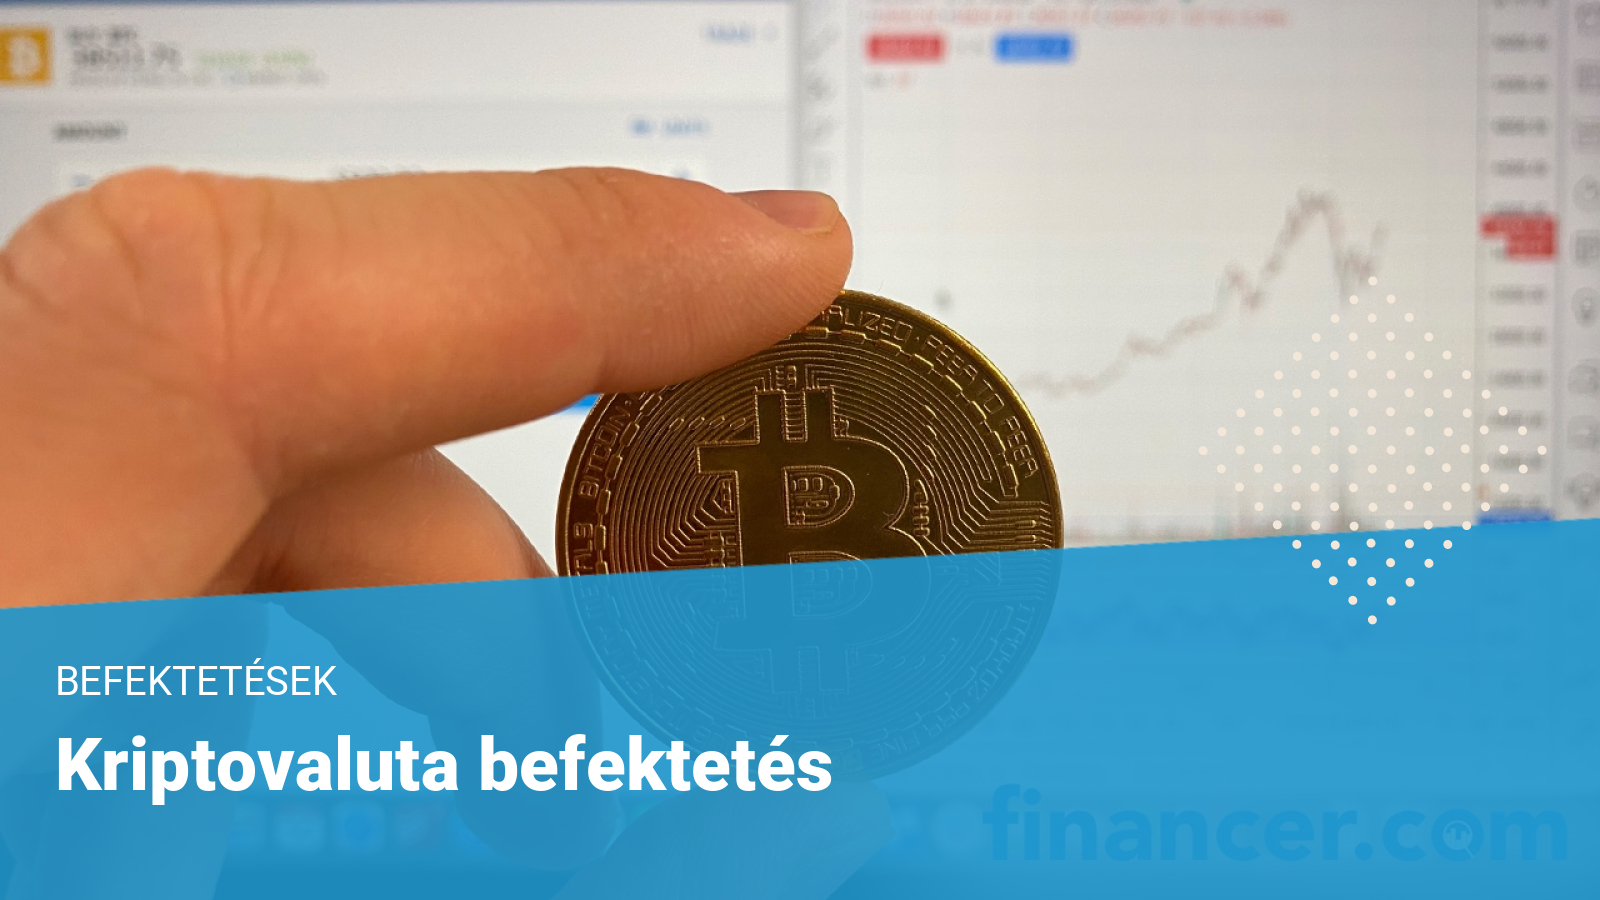 Feltörekvő kriptodevizák: miből lesz meg a Ferrari, ha a bitcoin már nem drágul annyit? | carvax.hu